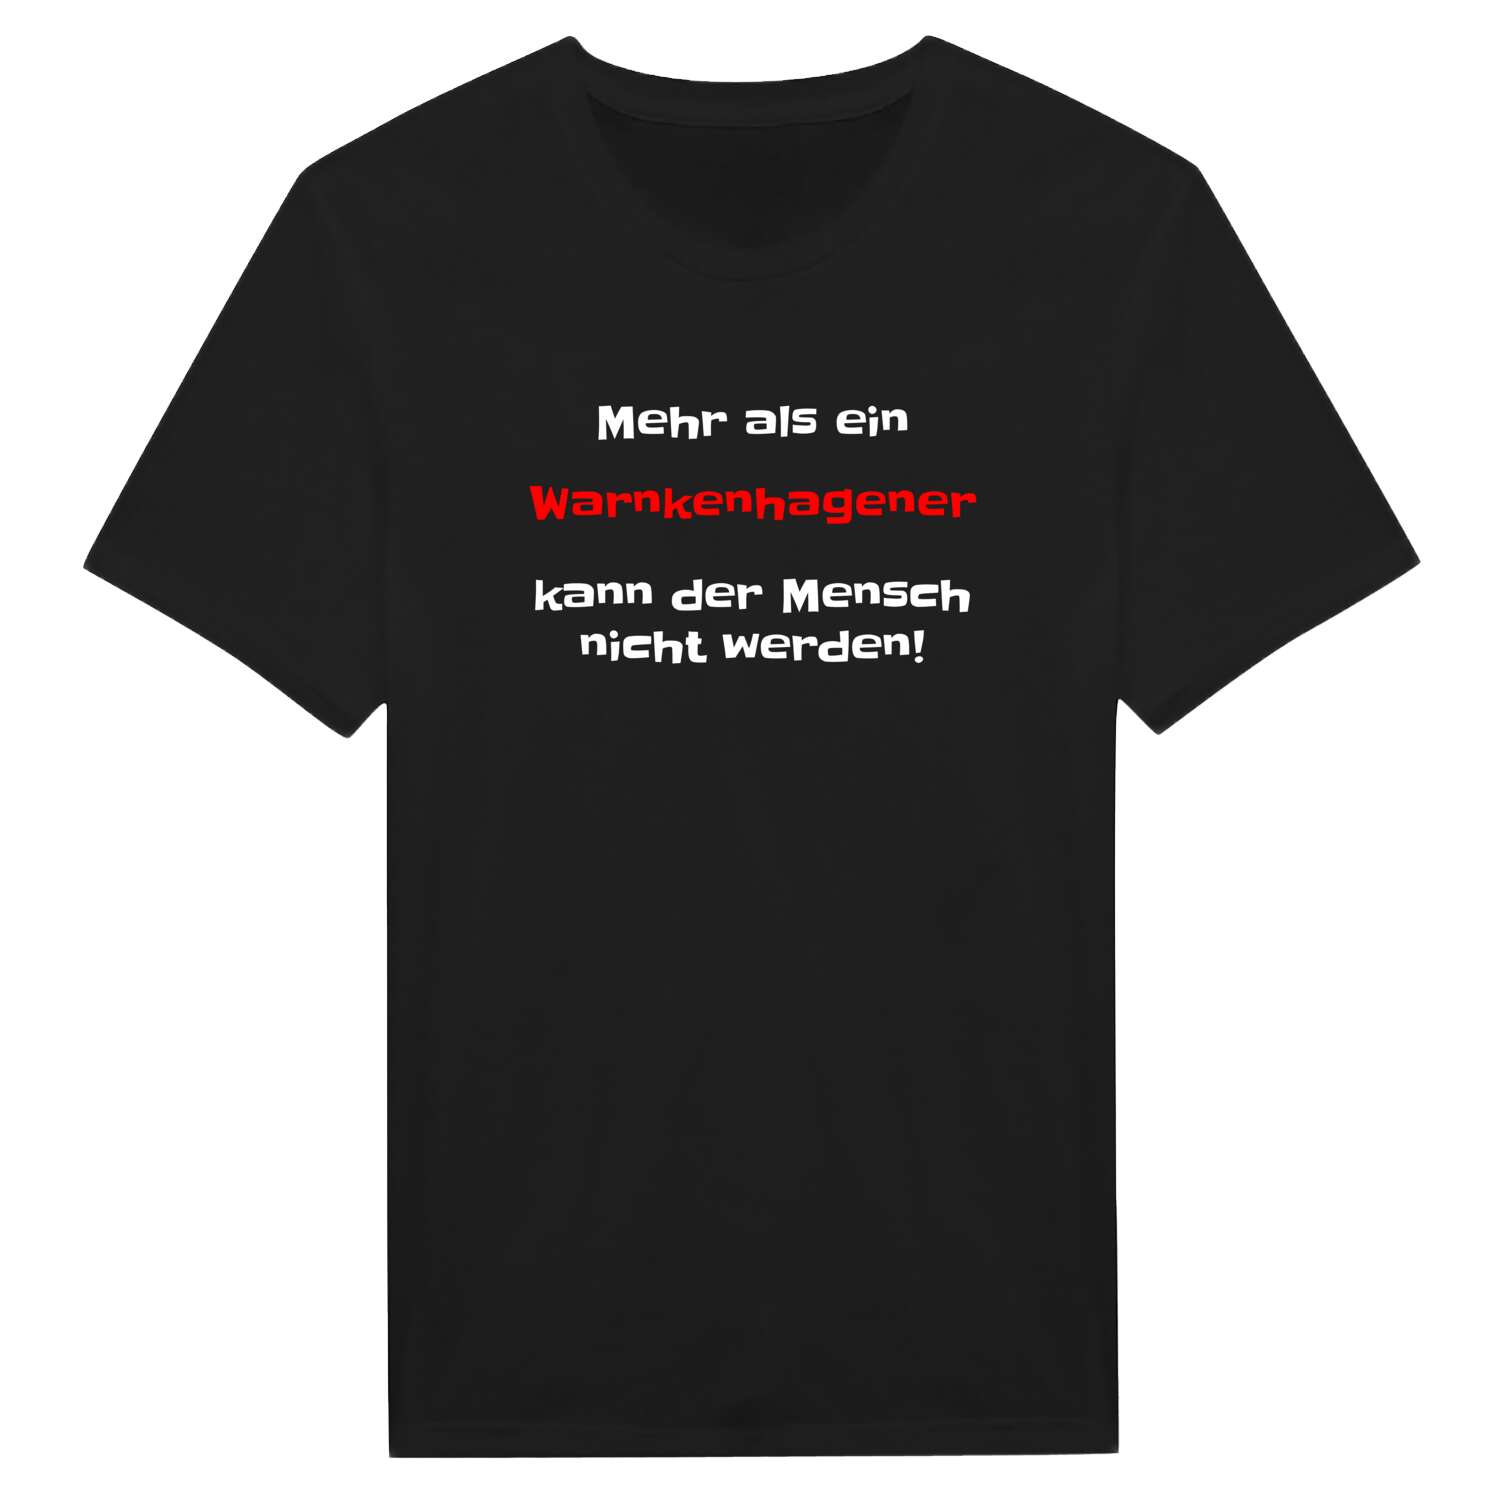 Warnkenhagen T-Shirt »Mehr als ein«